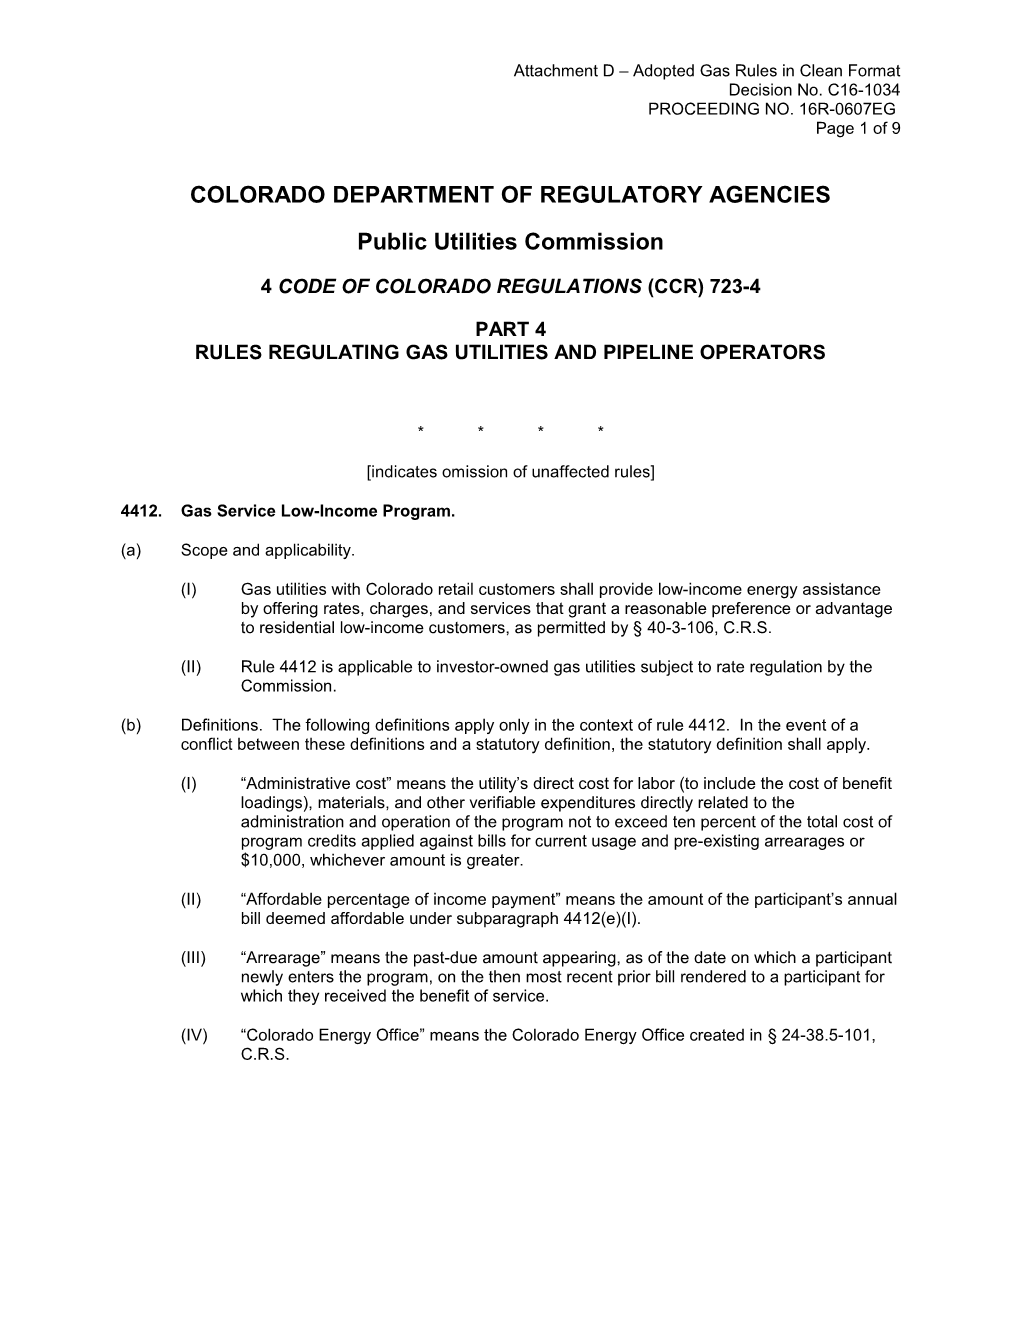 Colorado Department of Regulatory Agencies s11